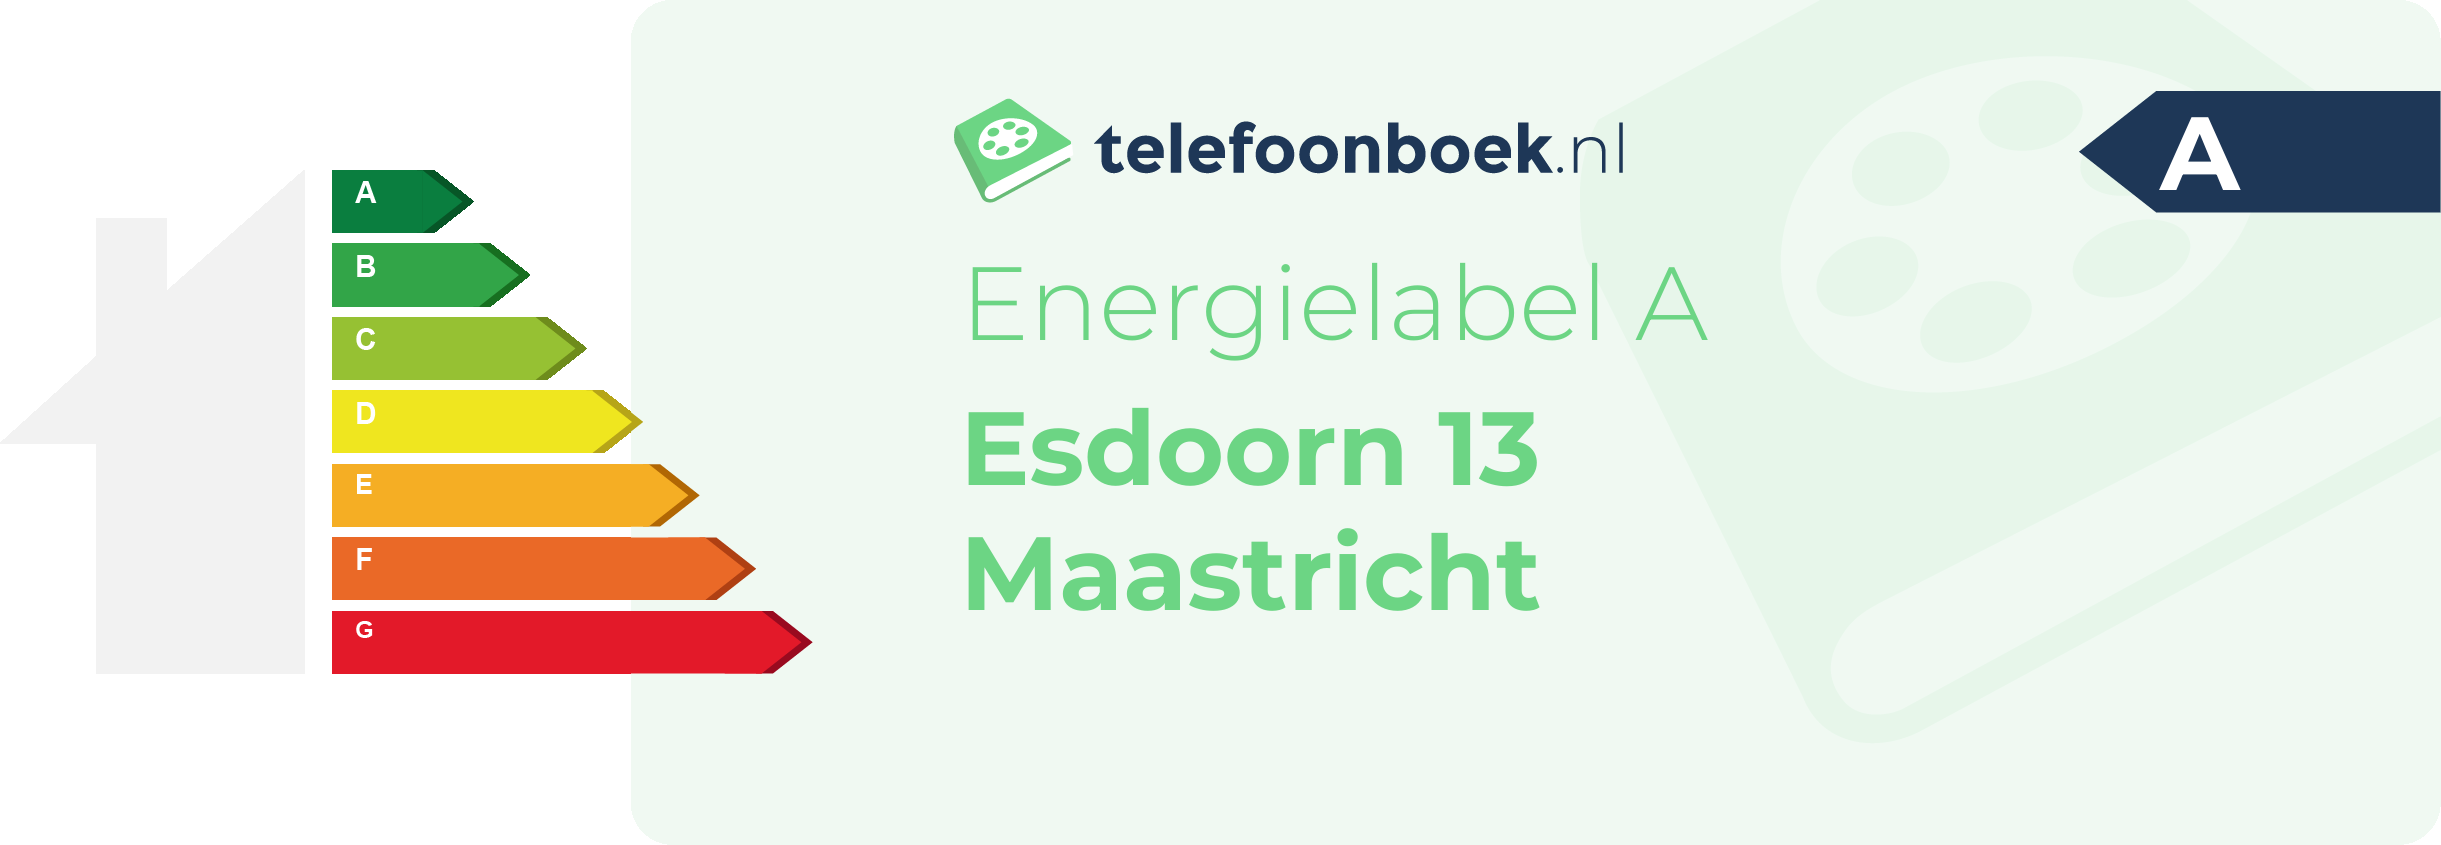 Energielabel Esdoorn 13 Maastricht